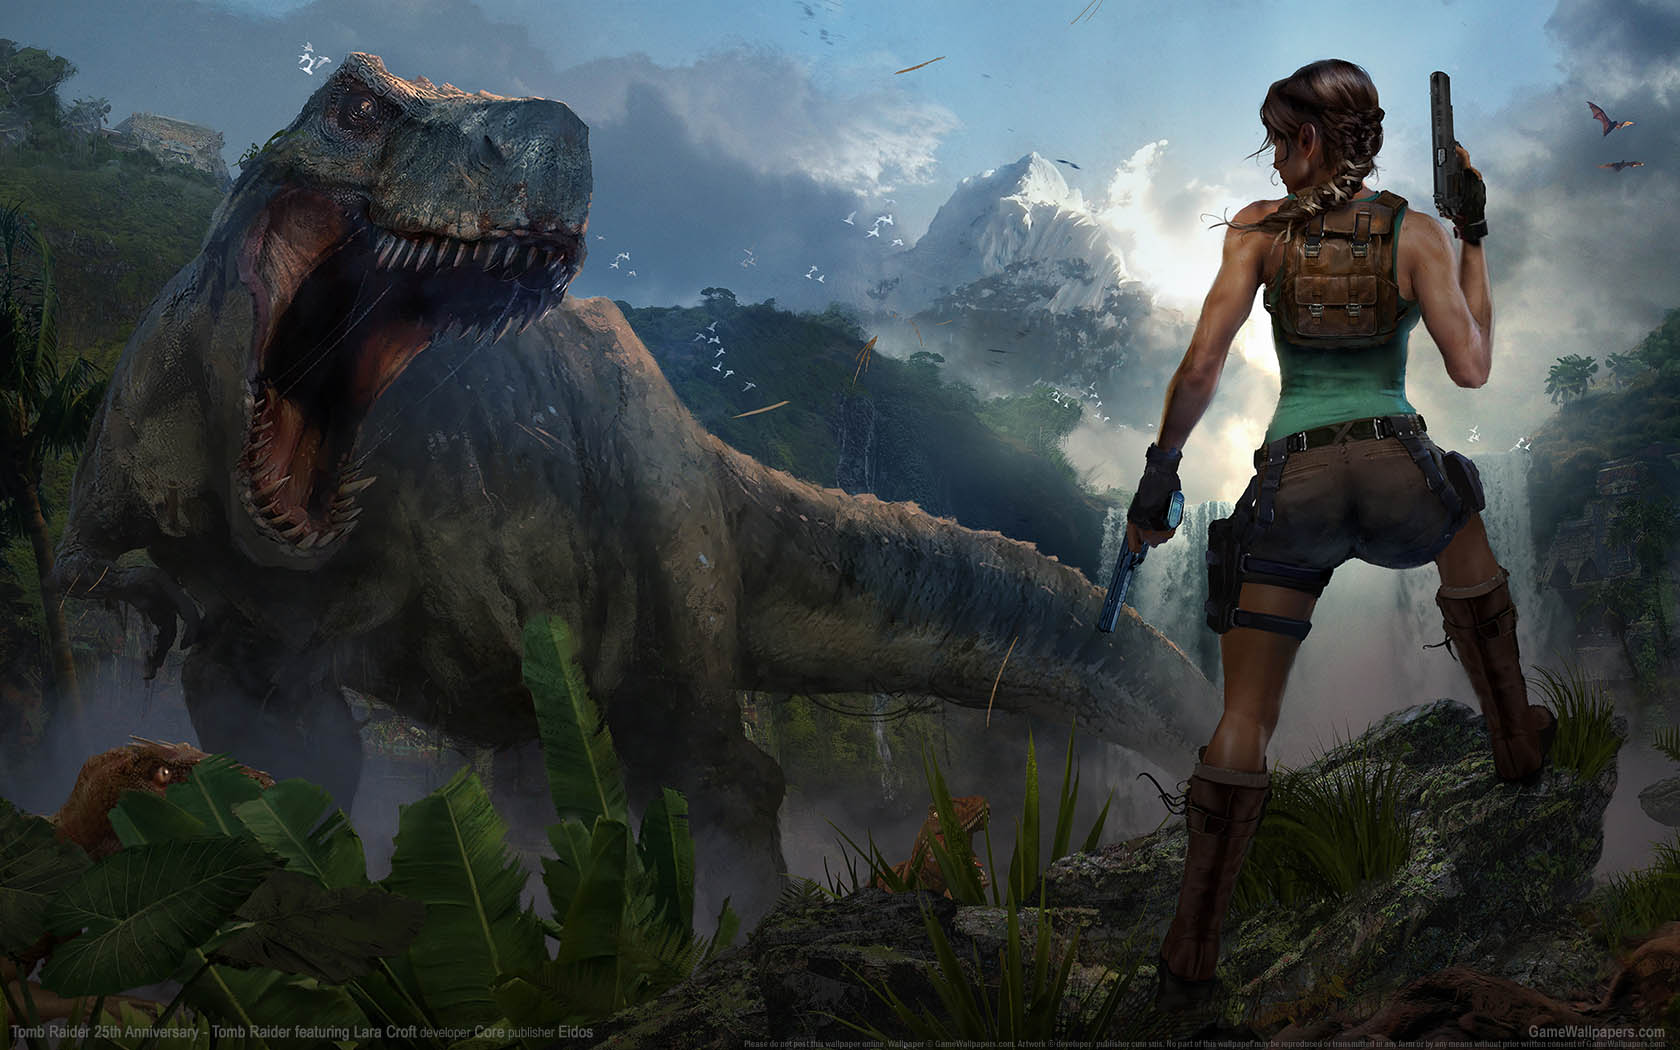 Tomb Raider 25th Anniversary fond d'cran 01 1680x1050